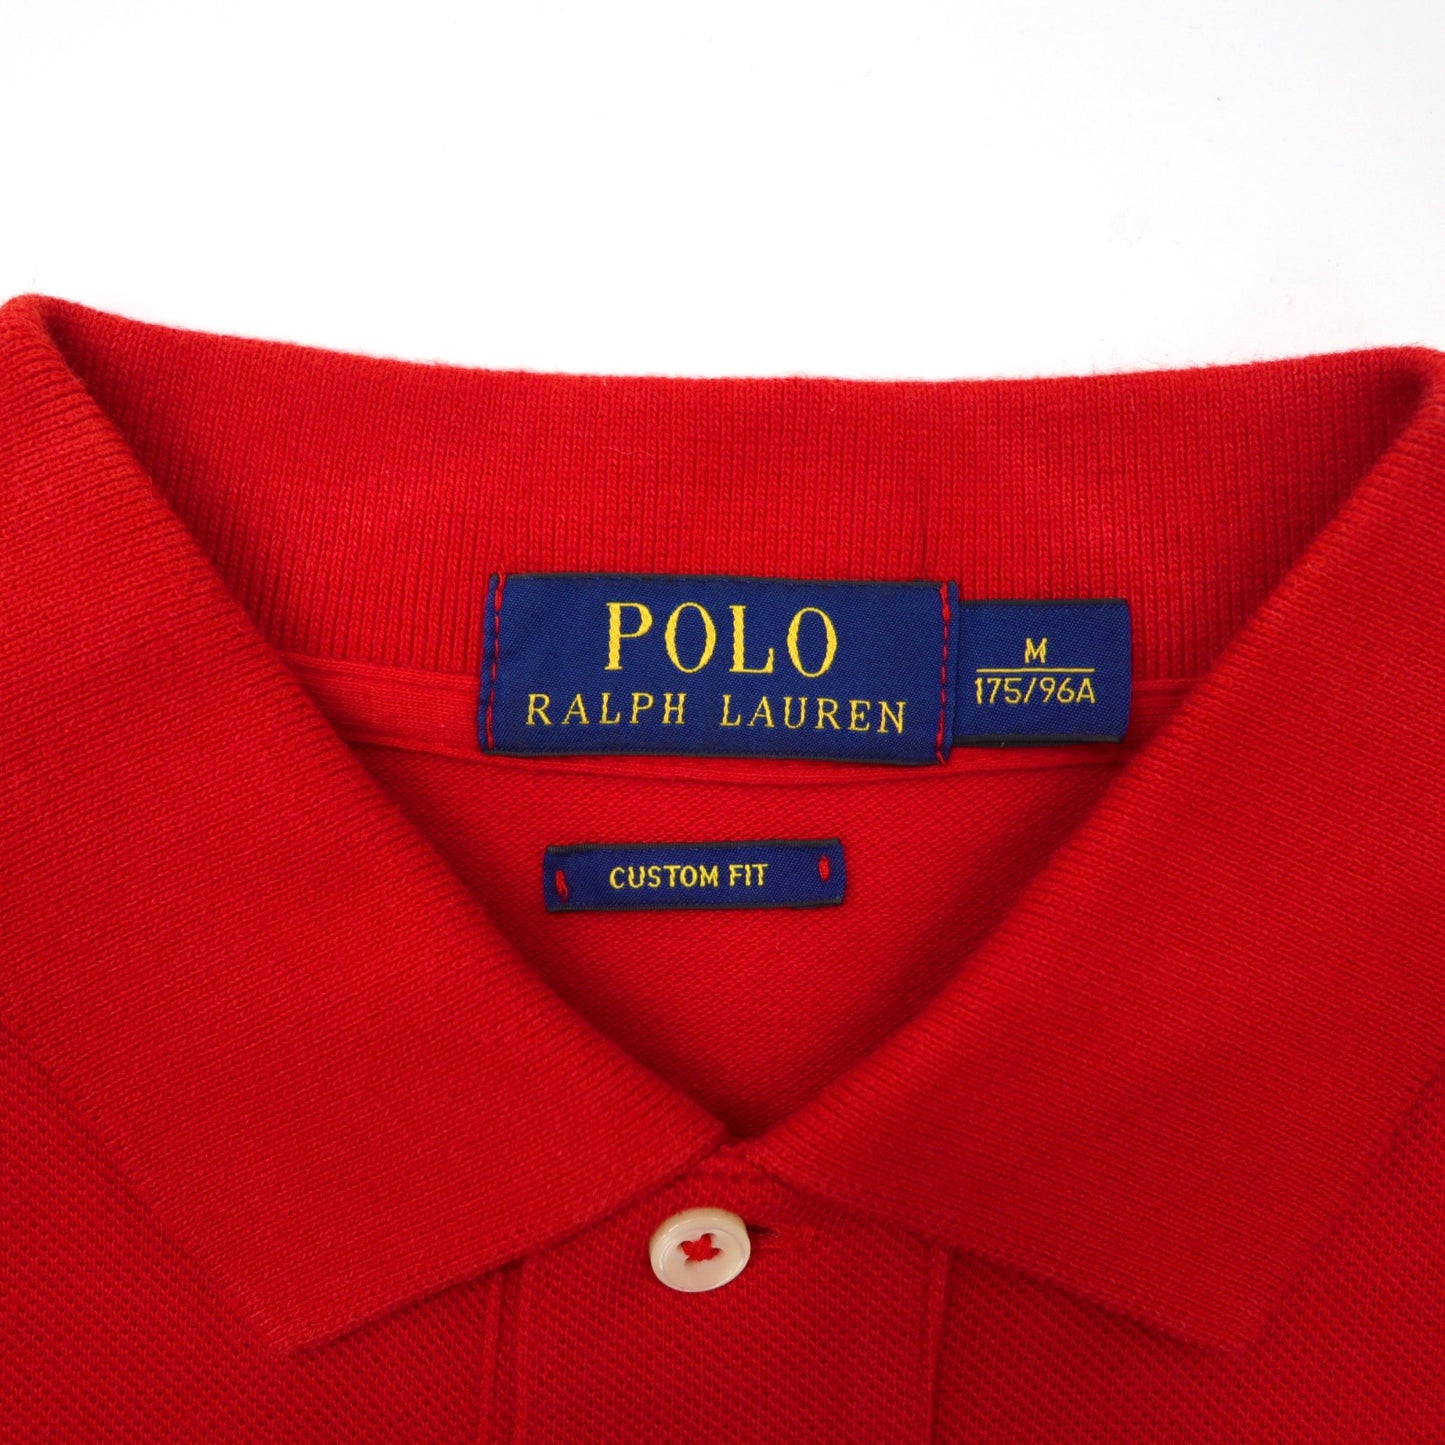 POLO RALPH LAUREN ラガーシャツ M レッド CUSTOM FIT ビッグポニー 刺繍